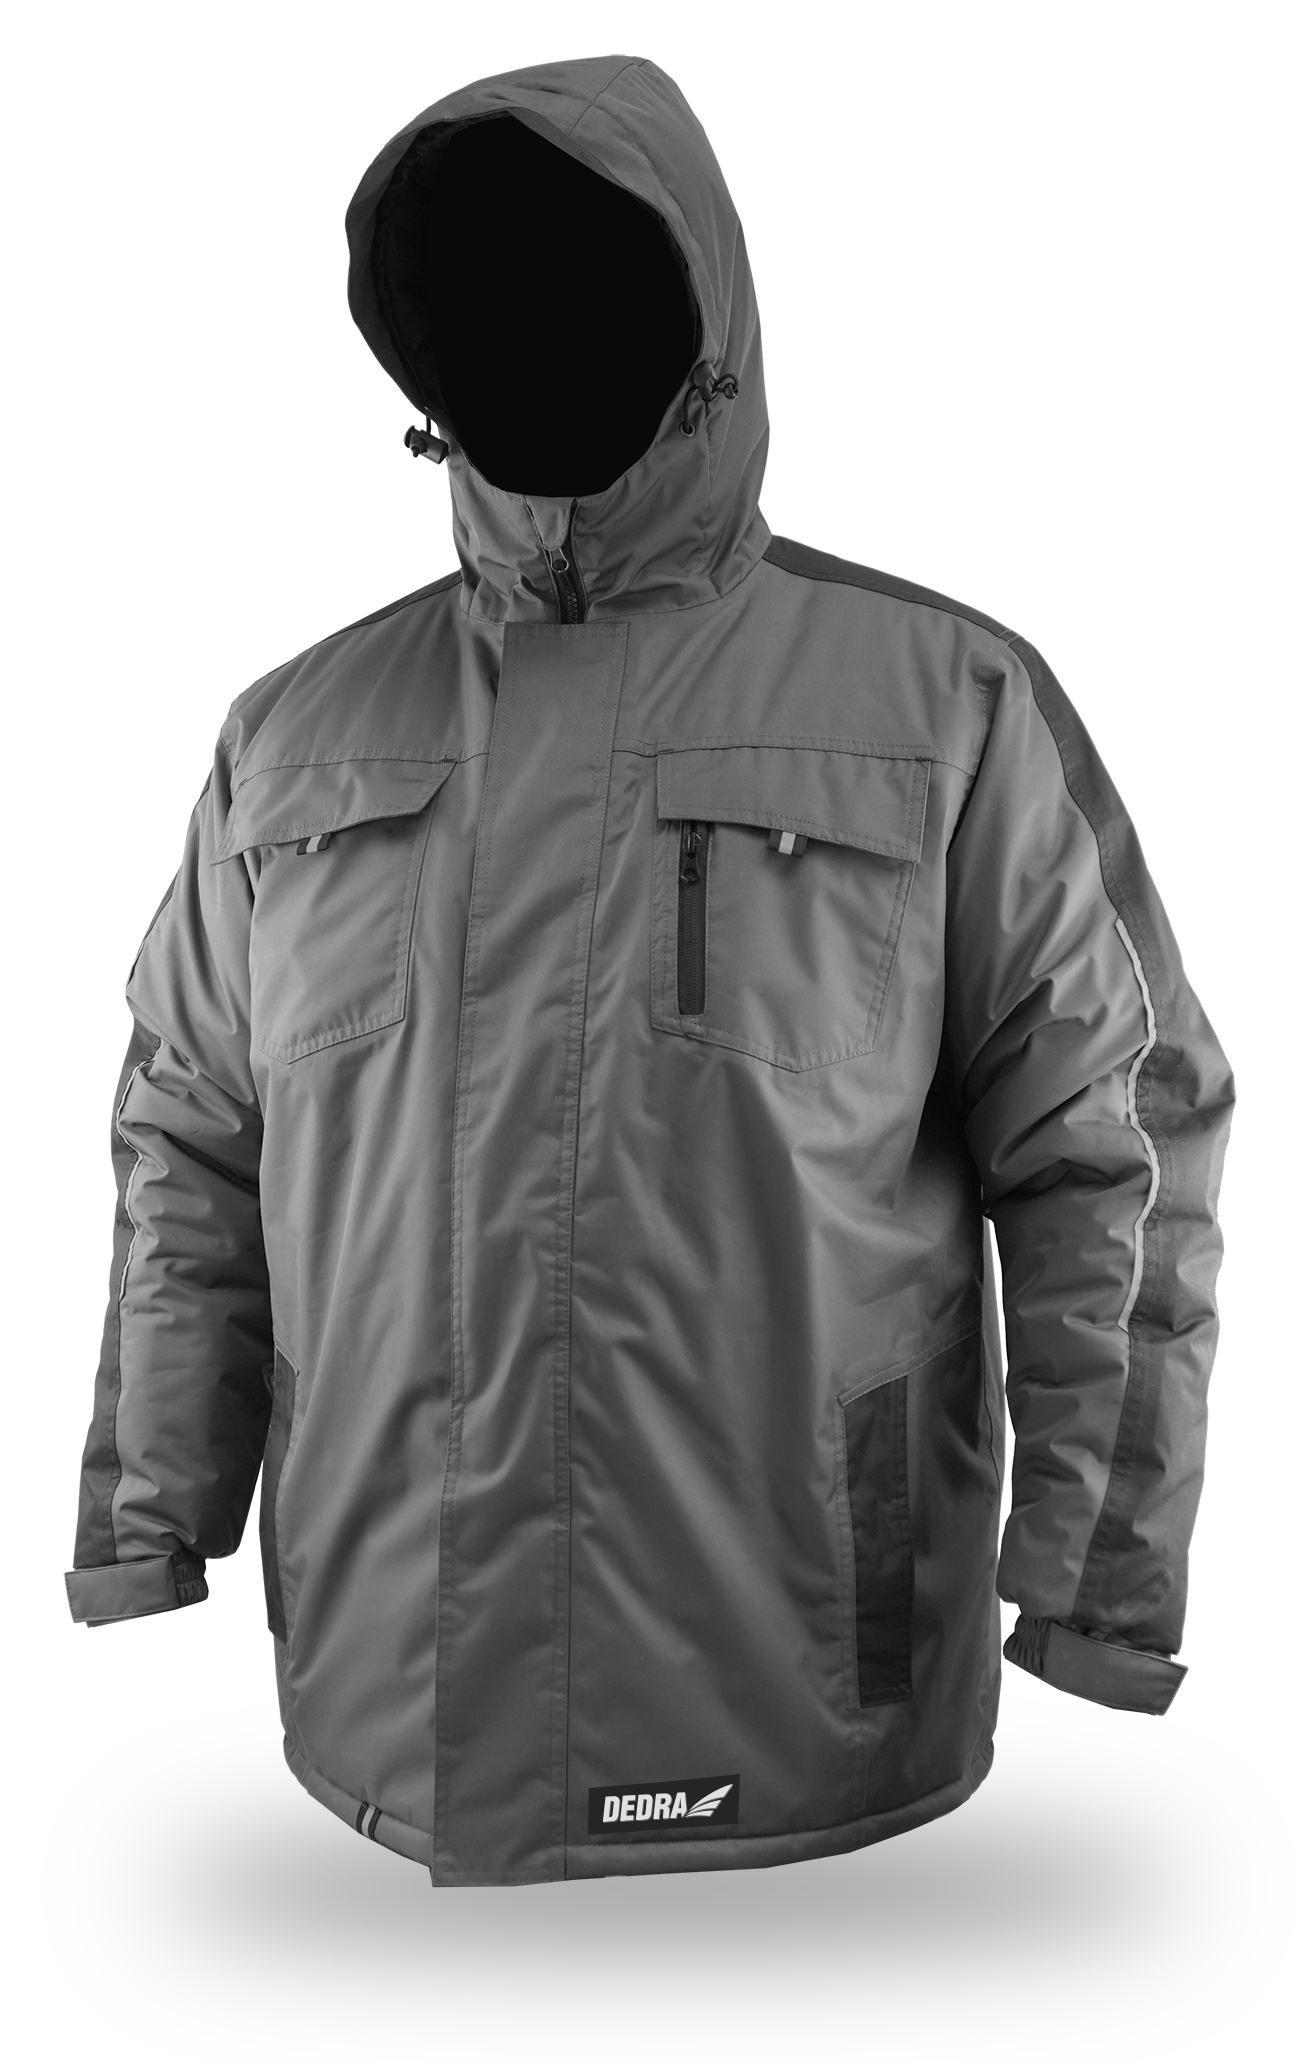 Zateplená zimní bunda s kapucí, velikost S DEDRA BH71K2-S + Dárek, servis bez starostí v hodnotě 300Kč